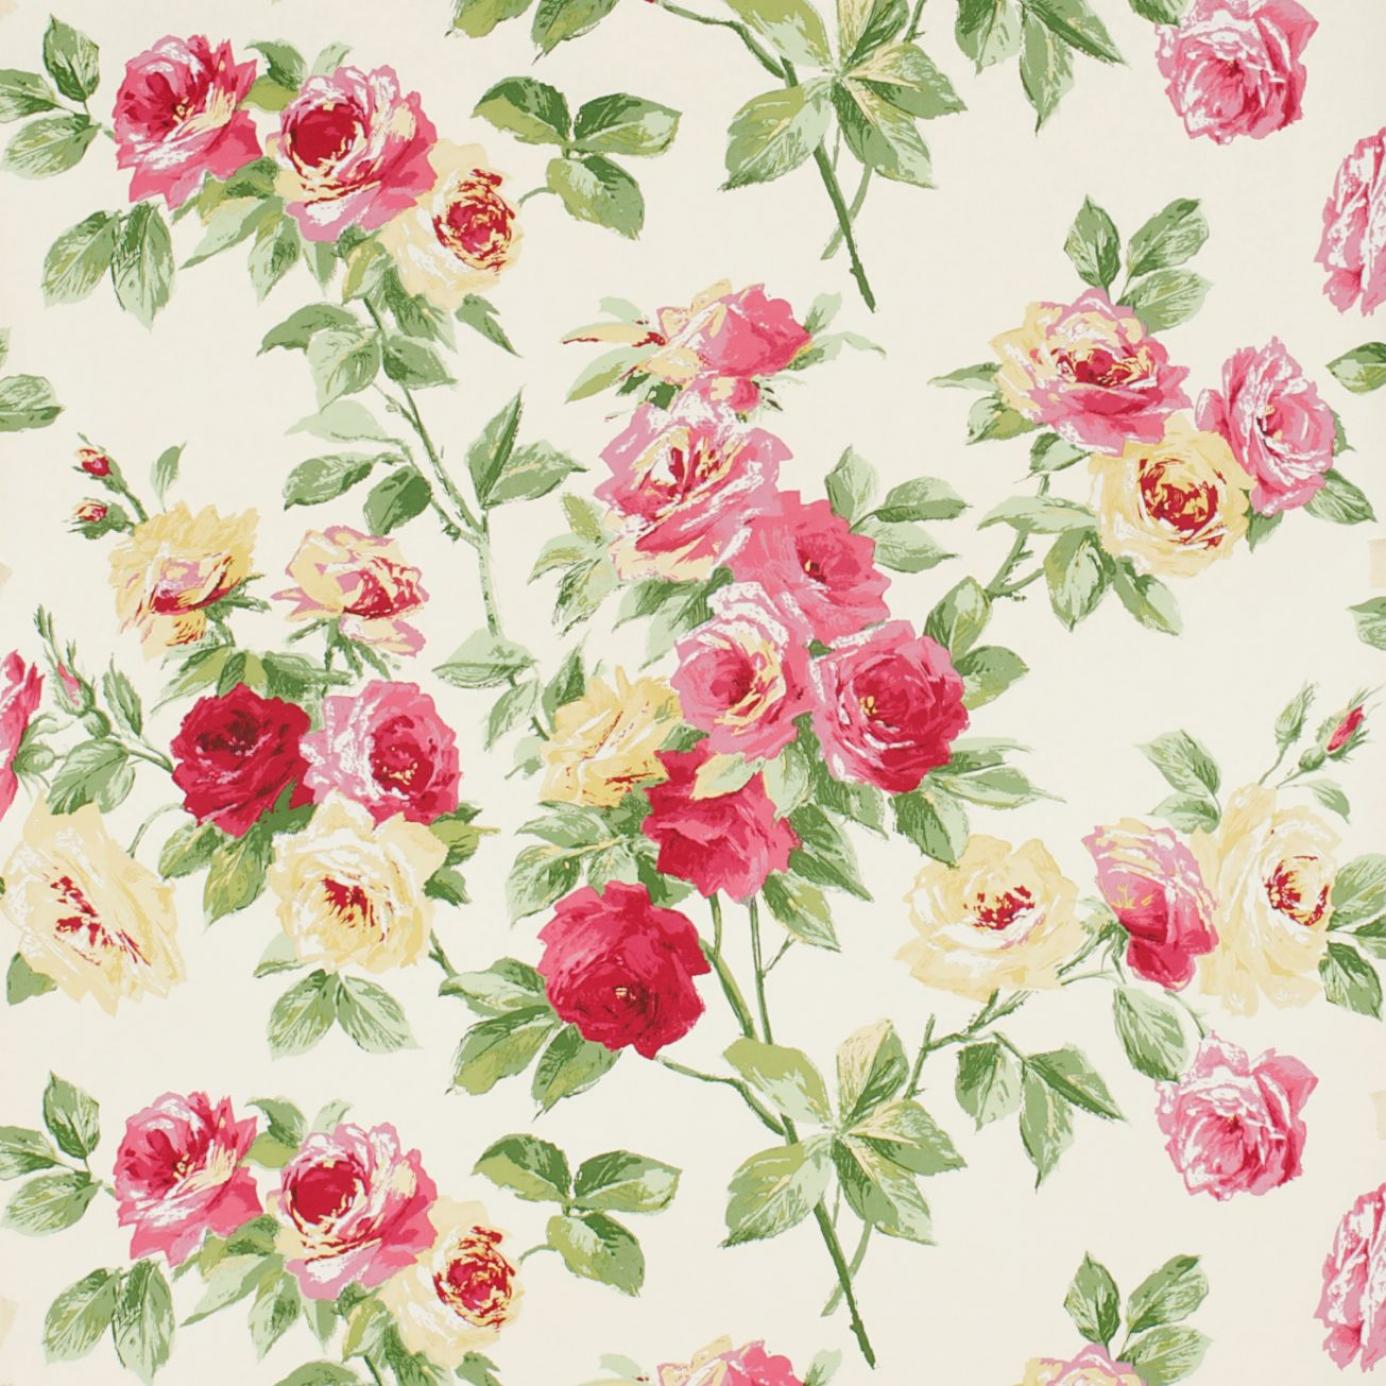 36+] Vintage Rose Wallpaper Pattern - WallpaperSafari